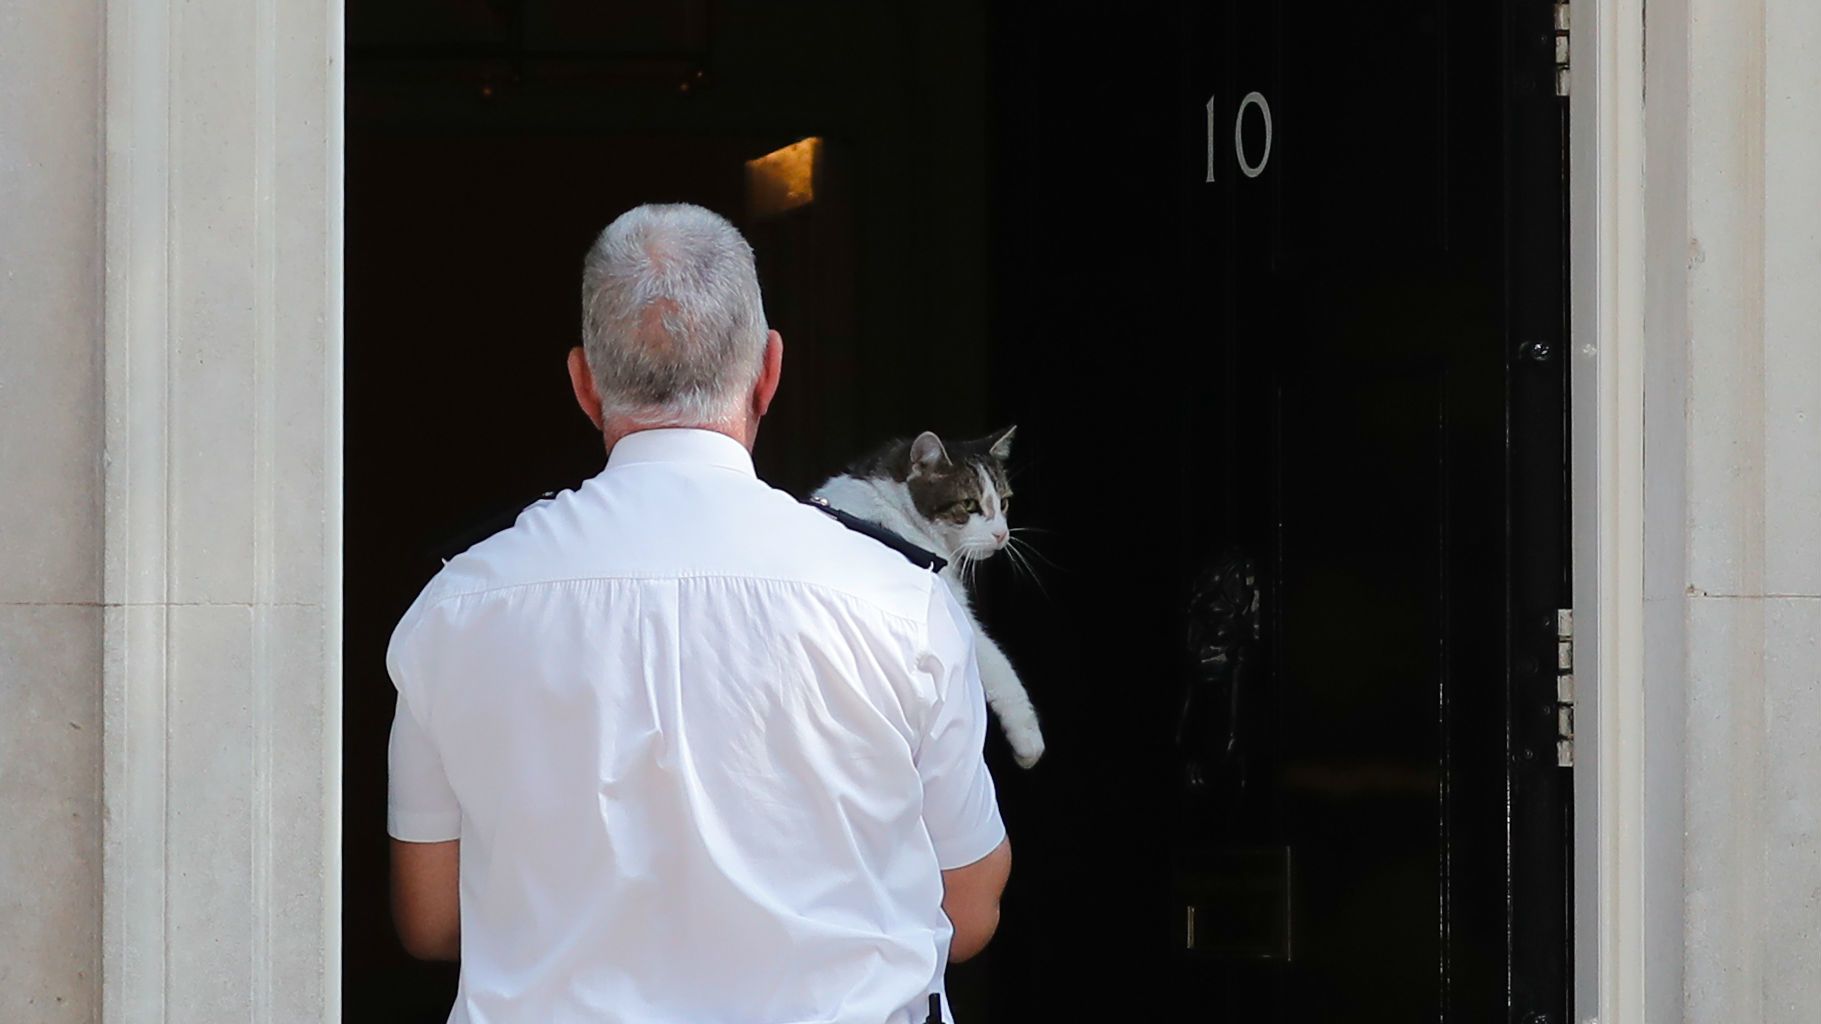 Larry, a Downing Street macskája szívesen lenne Theresa May utódja